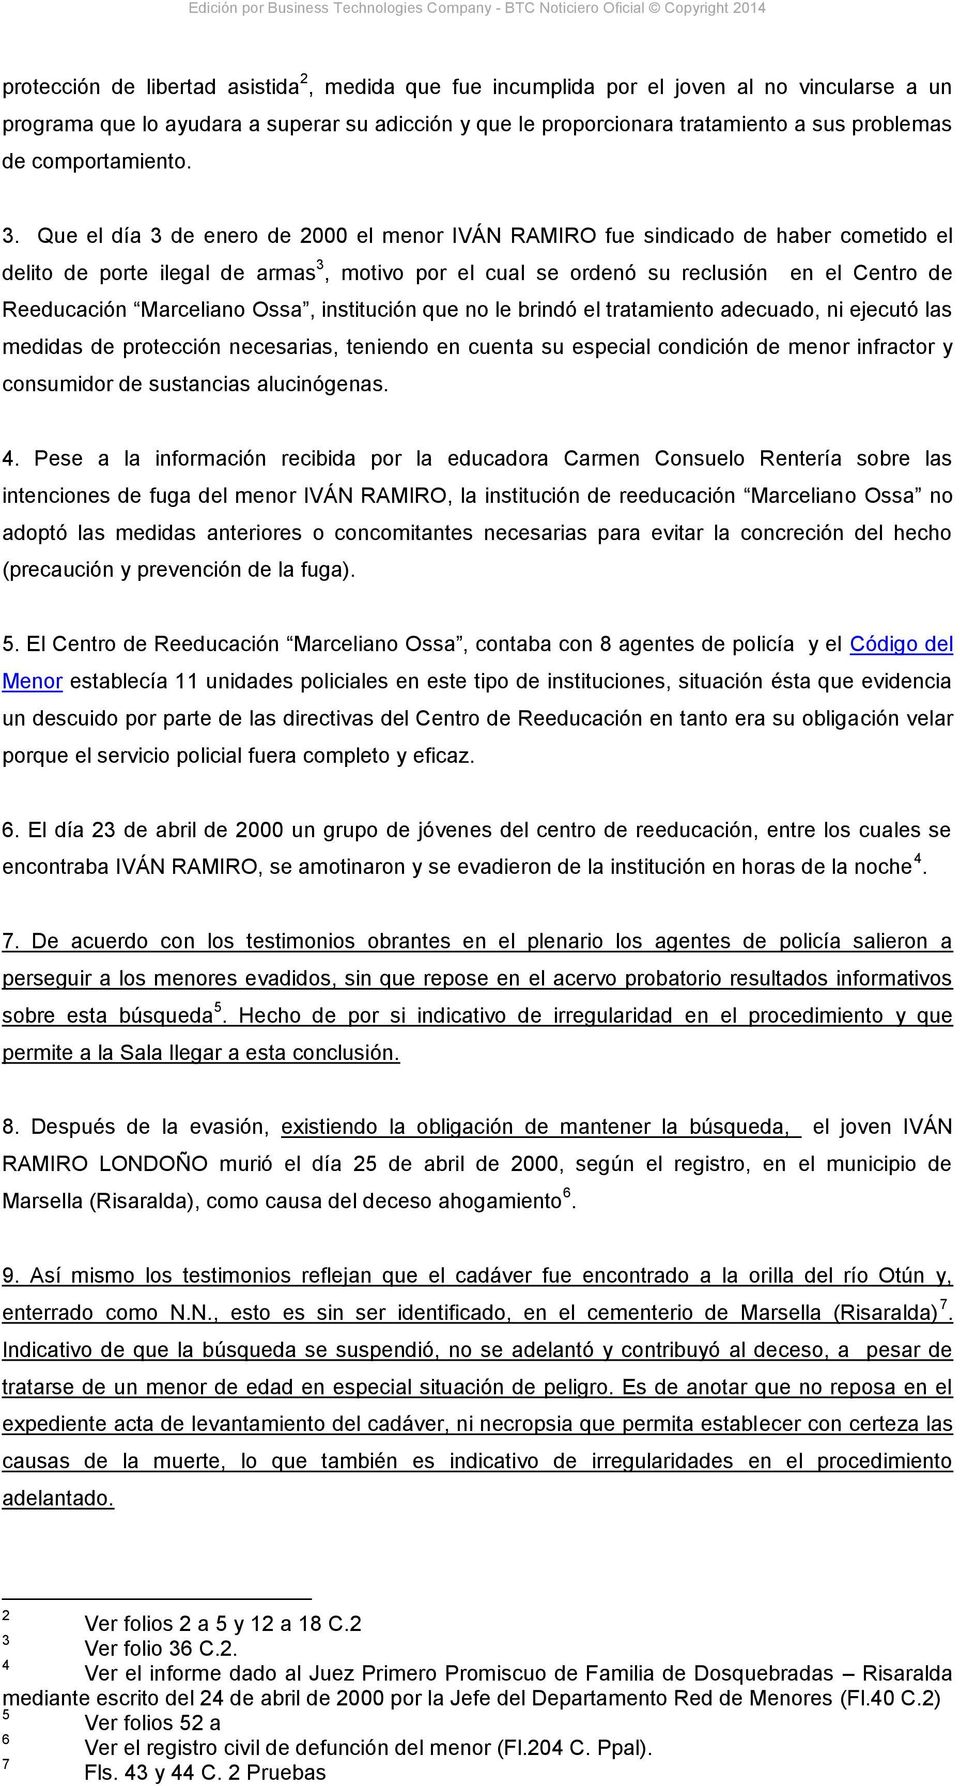 Que el día 3 de enero de 2000 el menor IVÁN RAMIRO fue sindicado de haber cometido el delito de porte ilegal de armas 3, motivo por el cual se ordenó su reclusión en el Centro de Reeducación